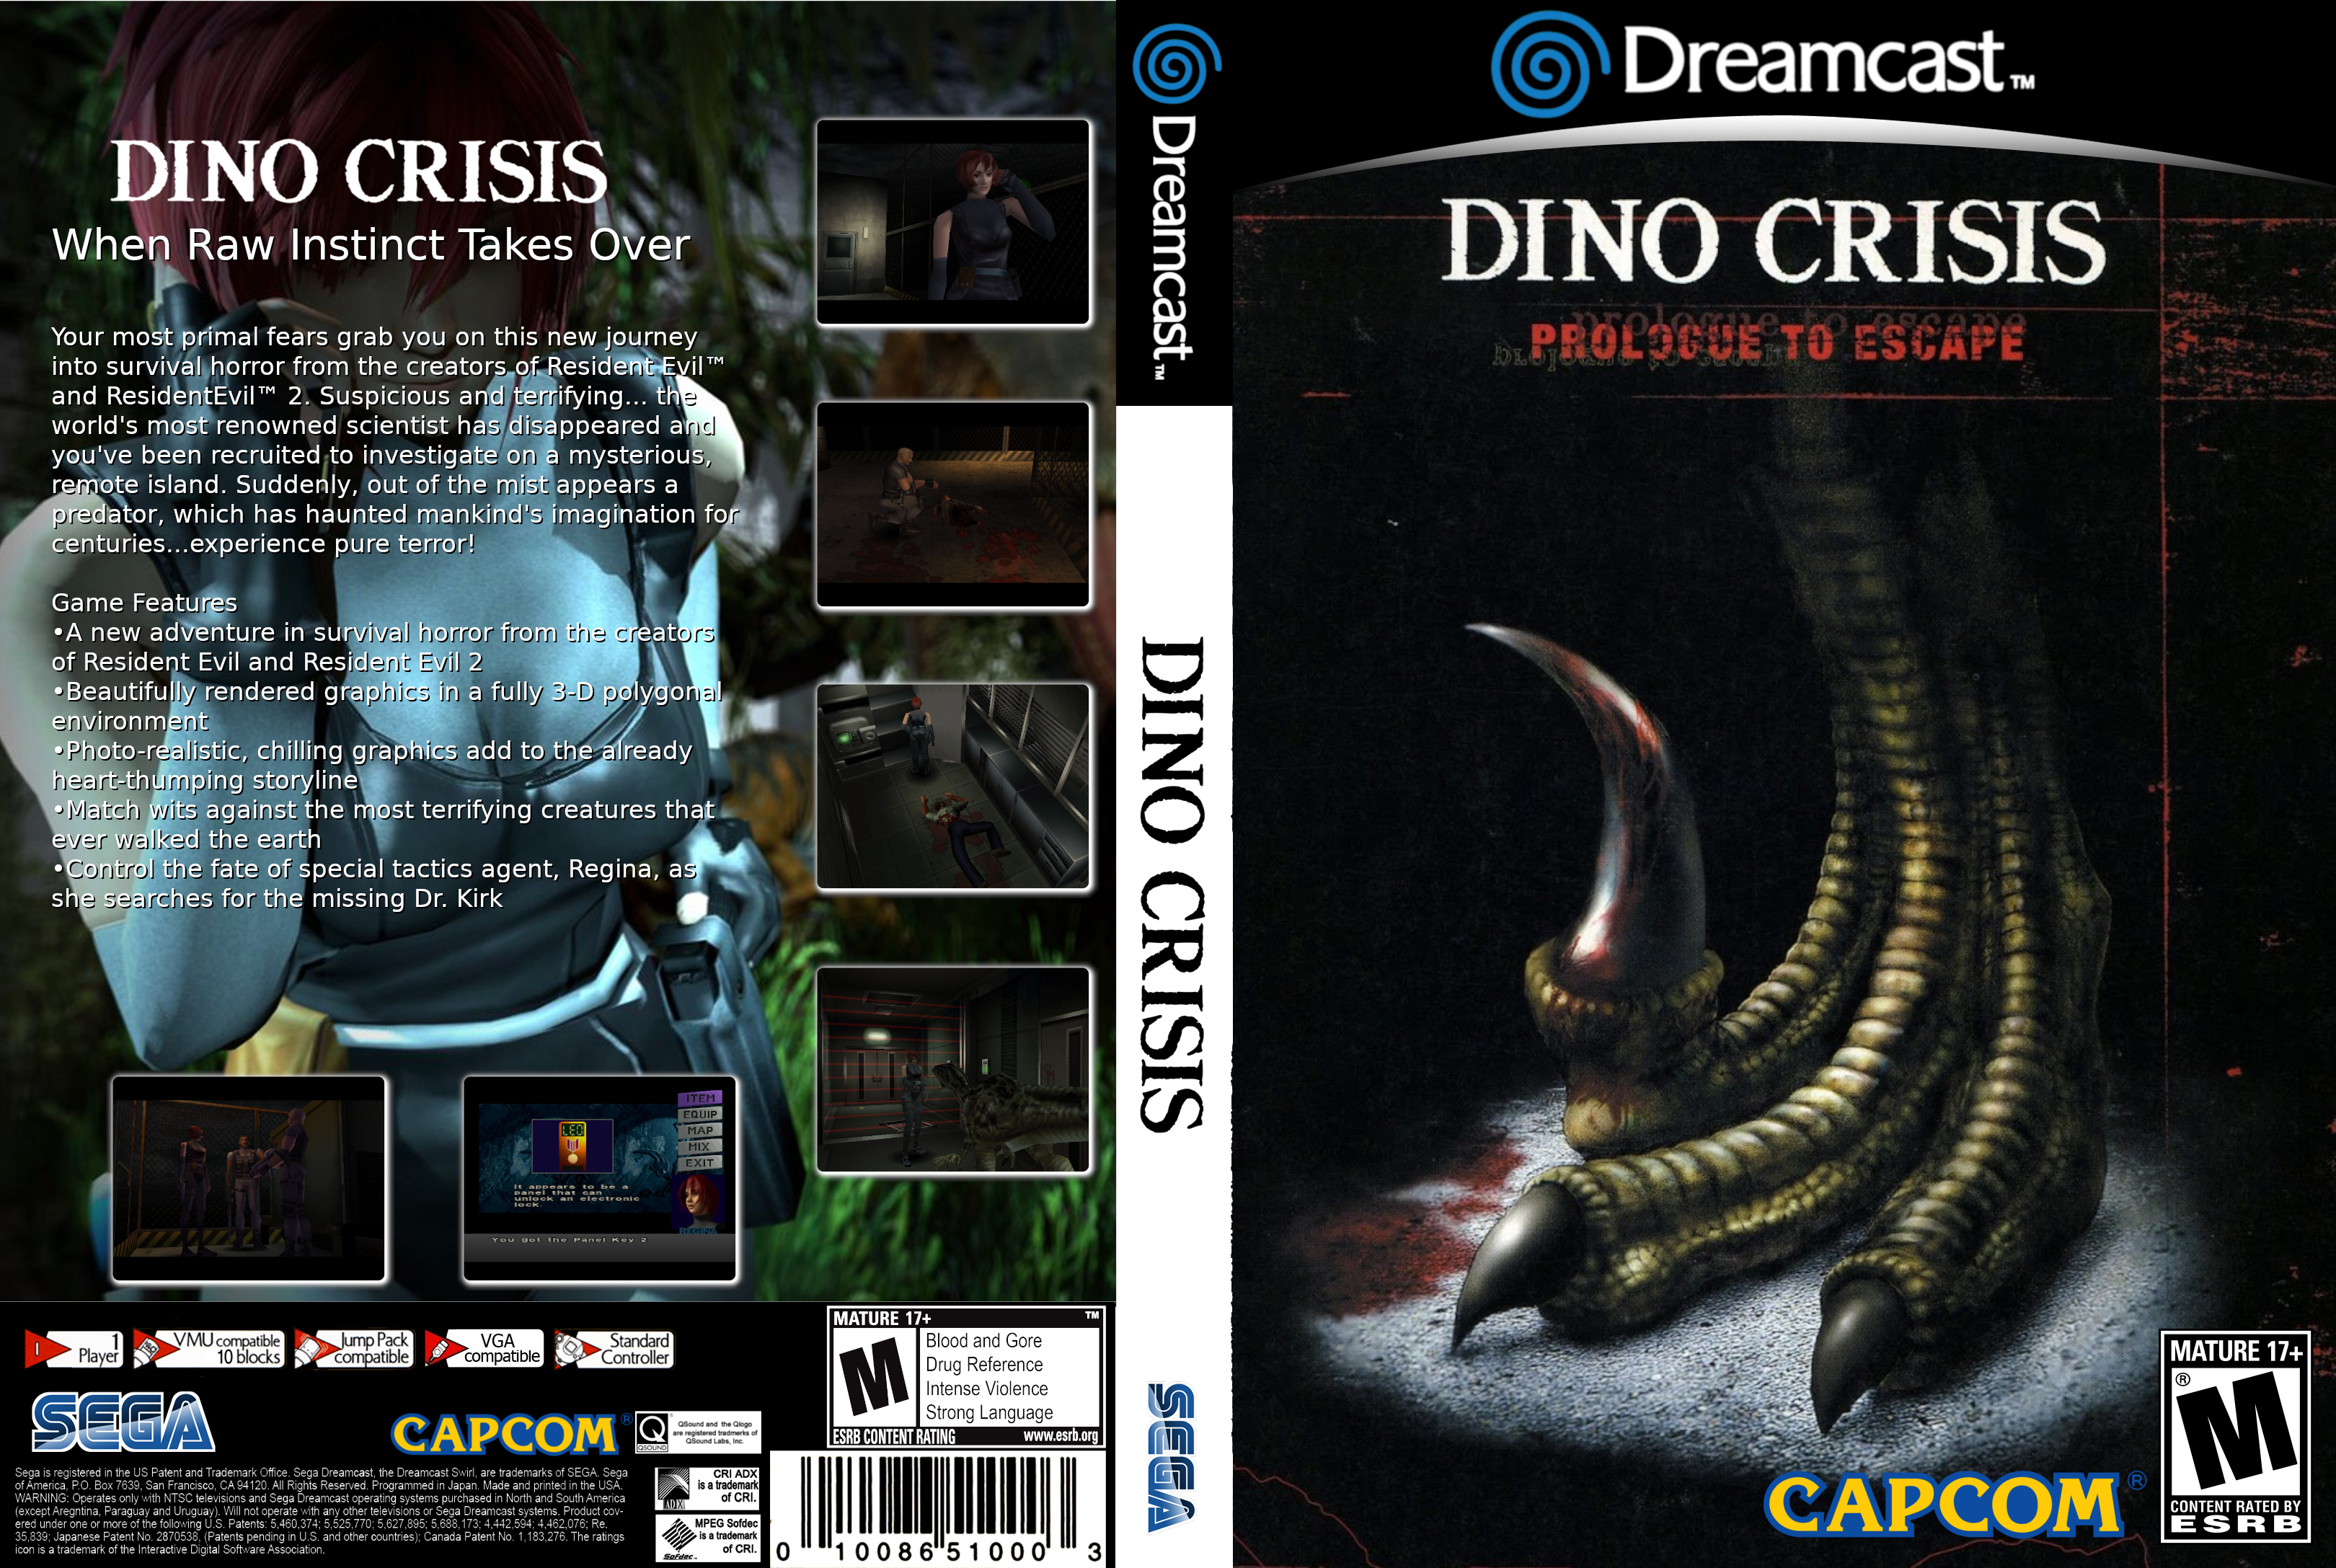 Dino_dreamcast%20EU%20V2.png